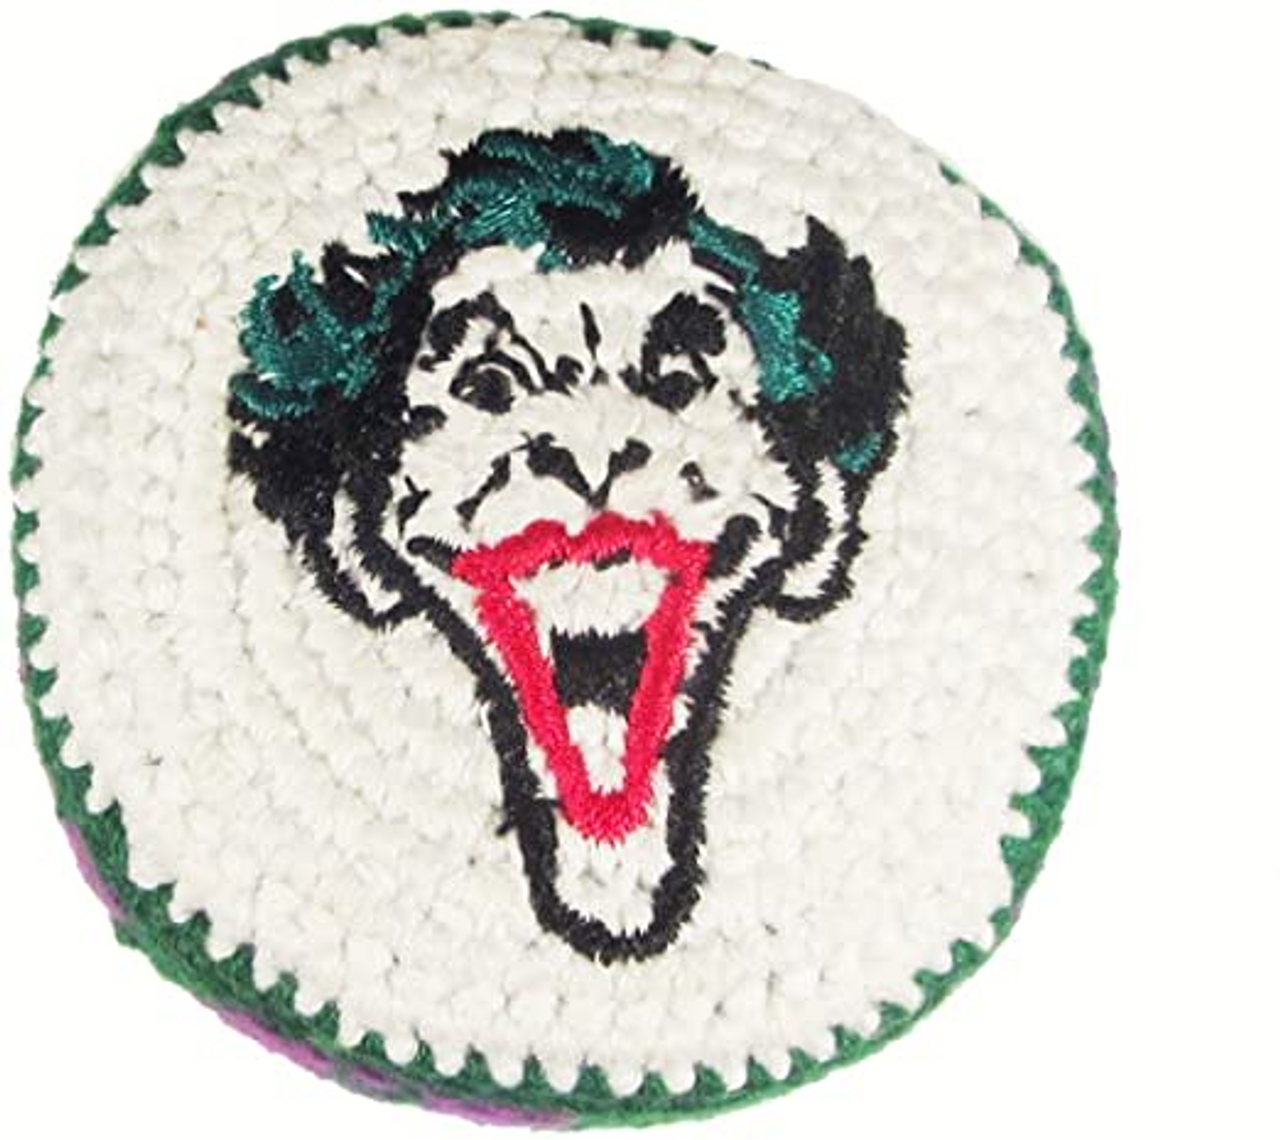 Joker Face Knitted Hacky Sack